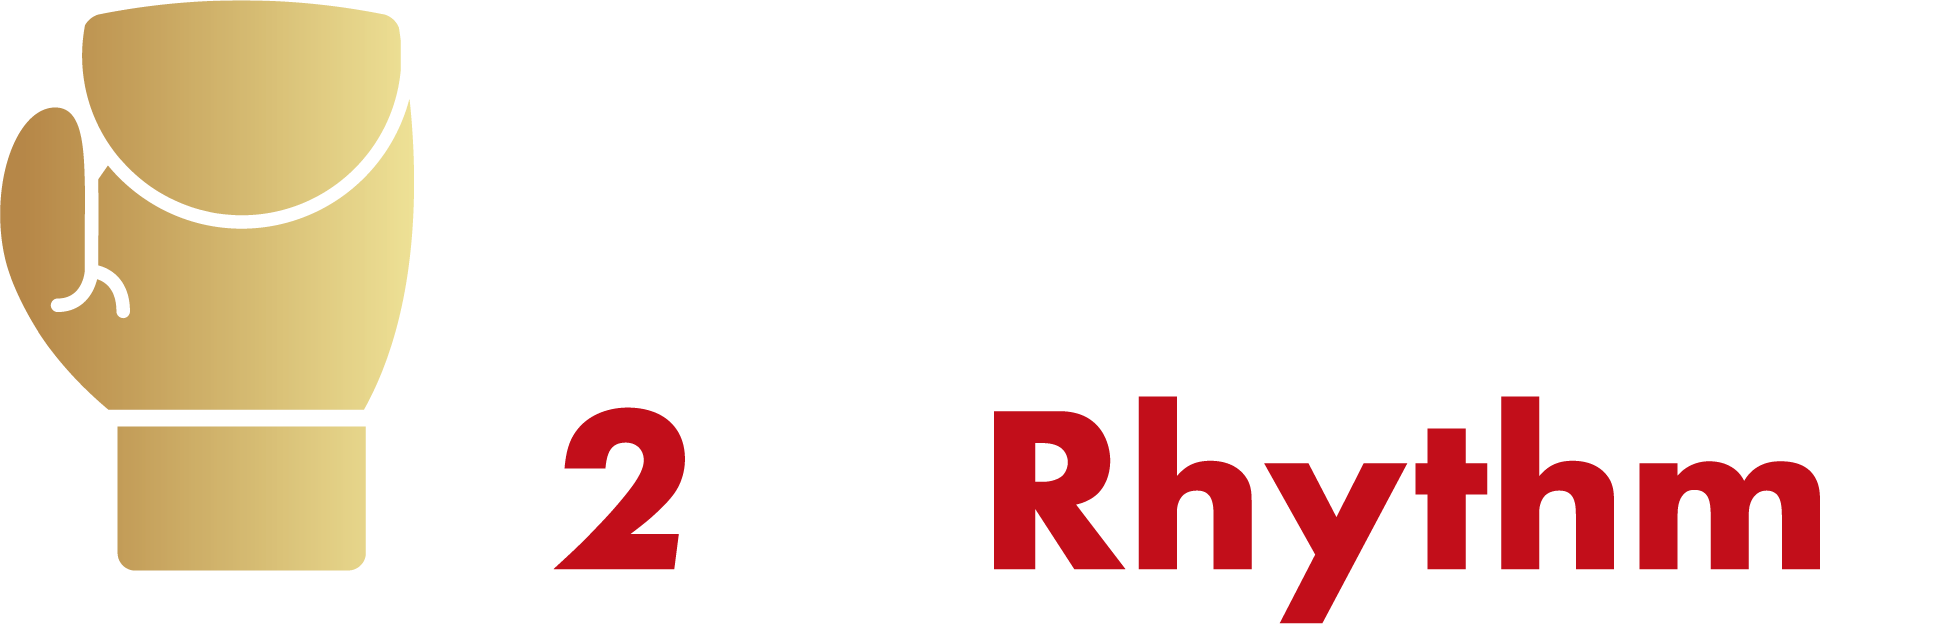 Box 2 the Rhythm